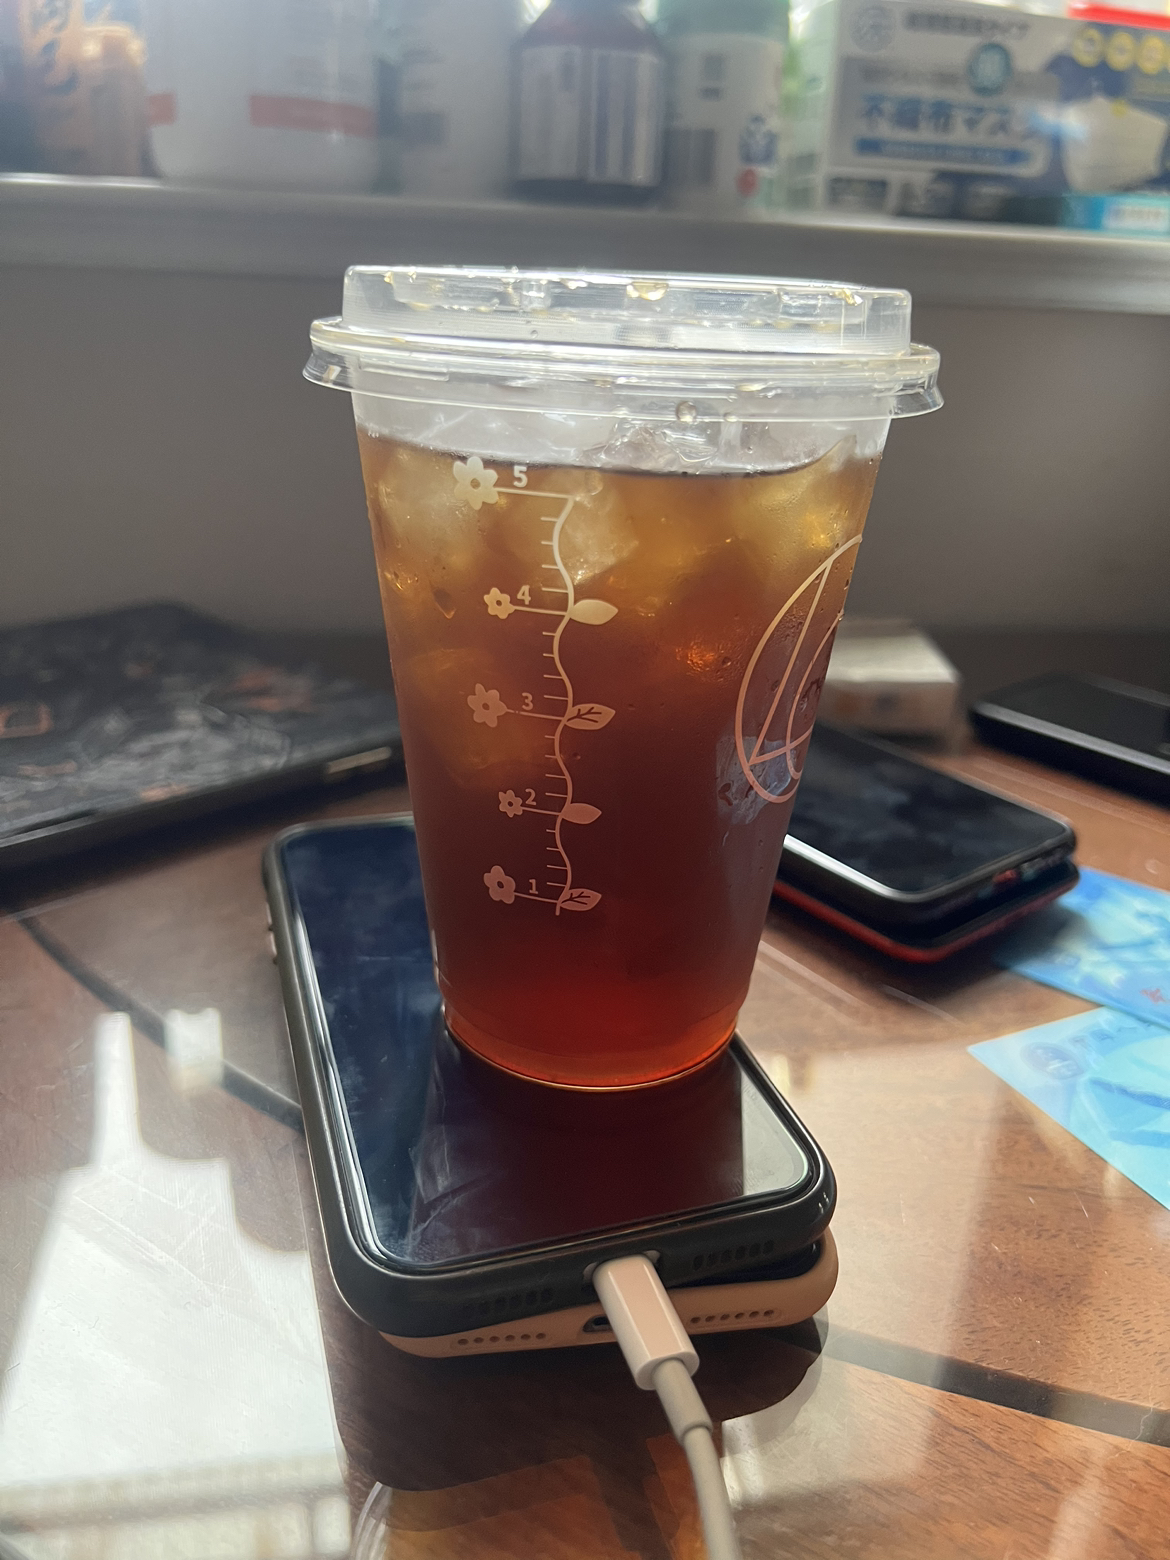 隅田川日本胶囊咖啡液浓缩黑咖啡原味18g*8颗晒单图